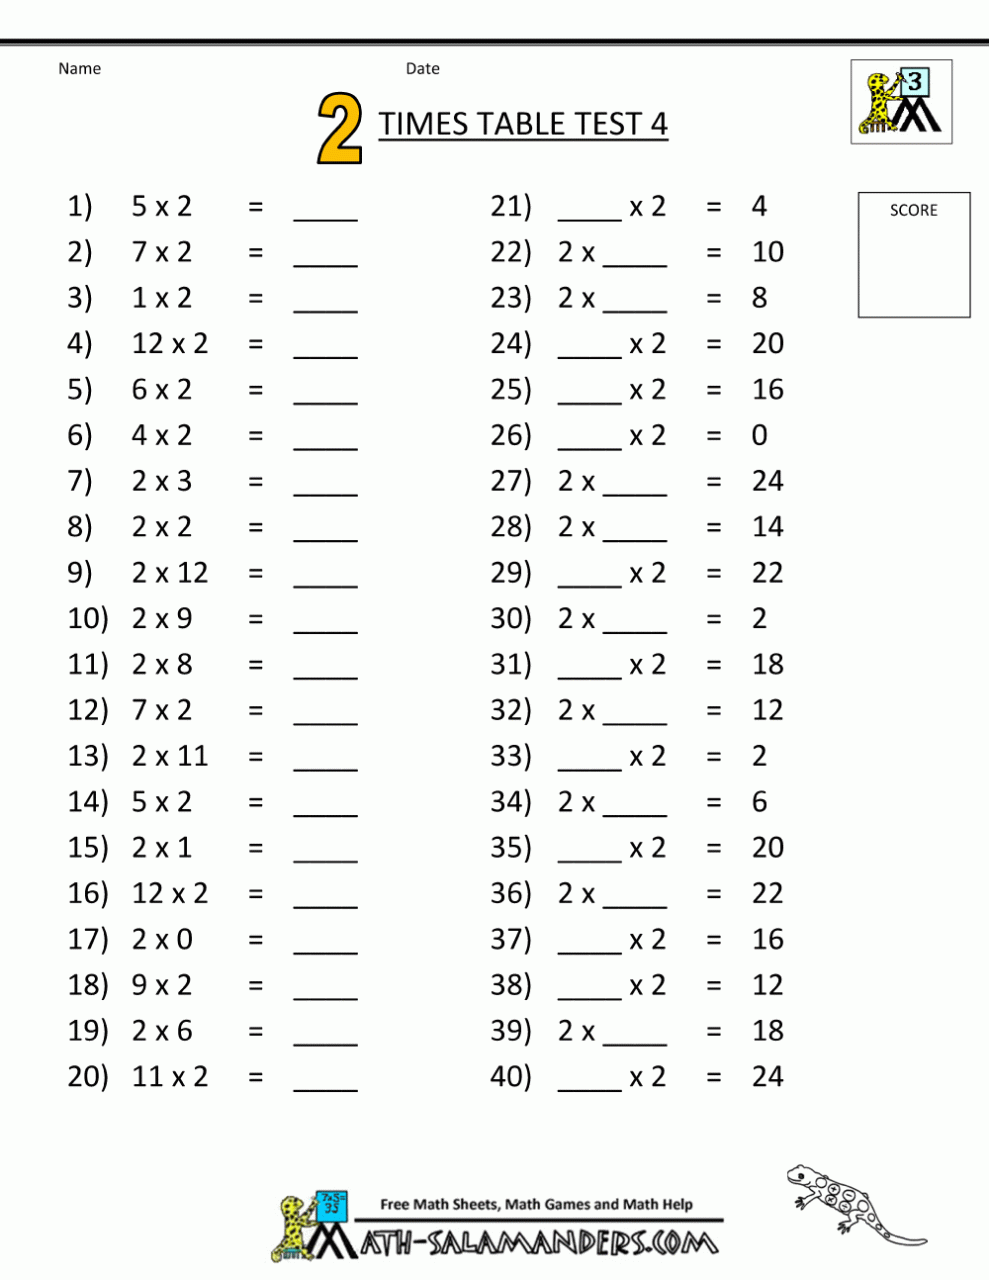 multiplication-worksheets-2-times-tables-thekidsworksheet